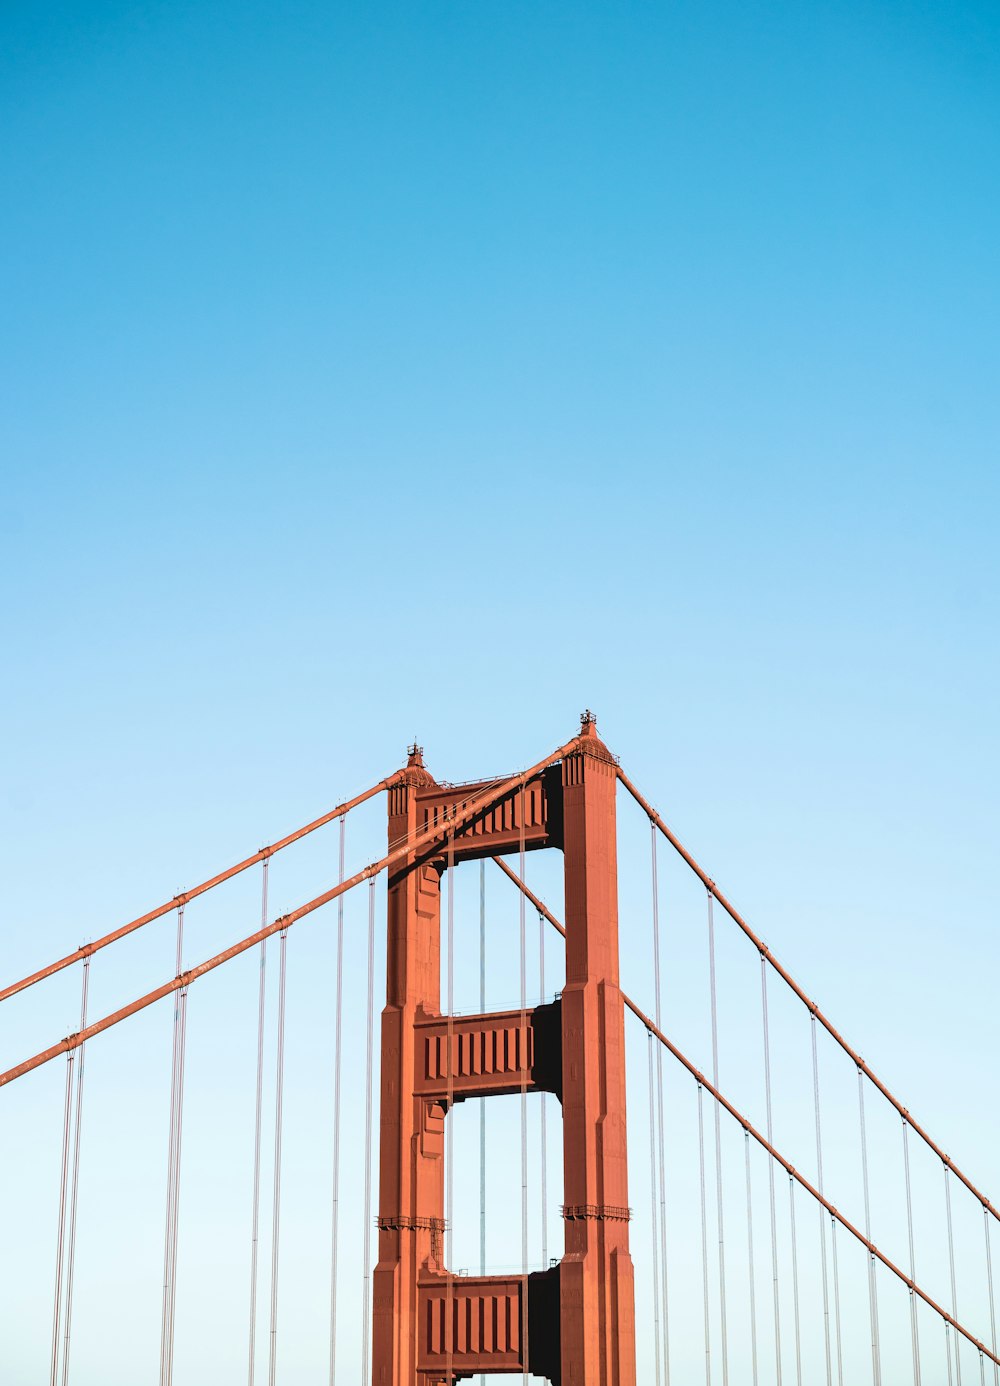 Golden Gate Bridge von San Francisco unter strahlend blauem Himmel